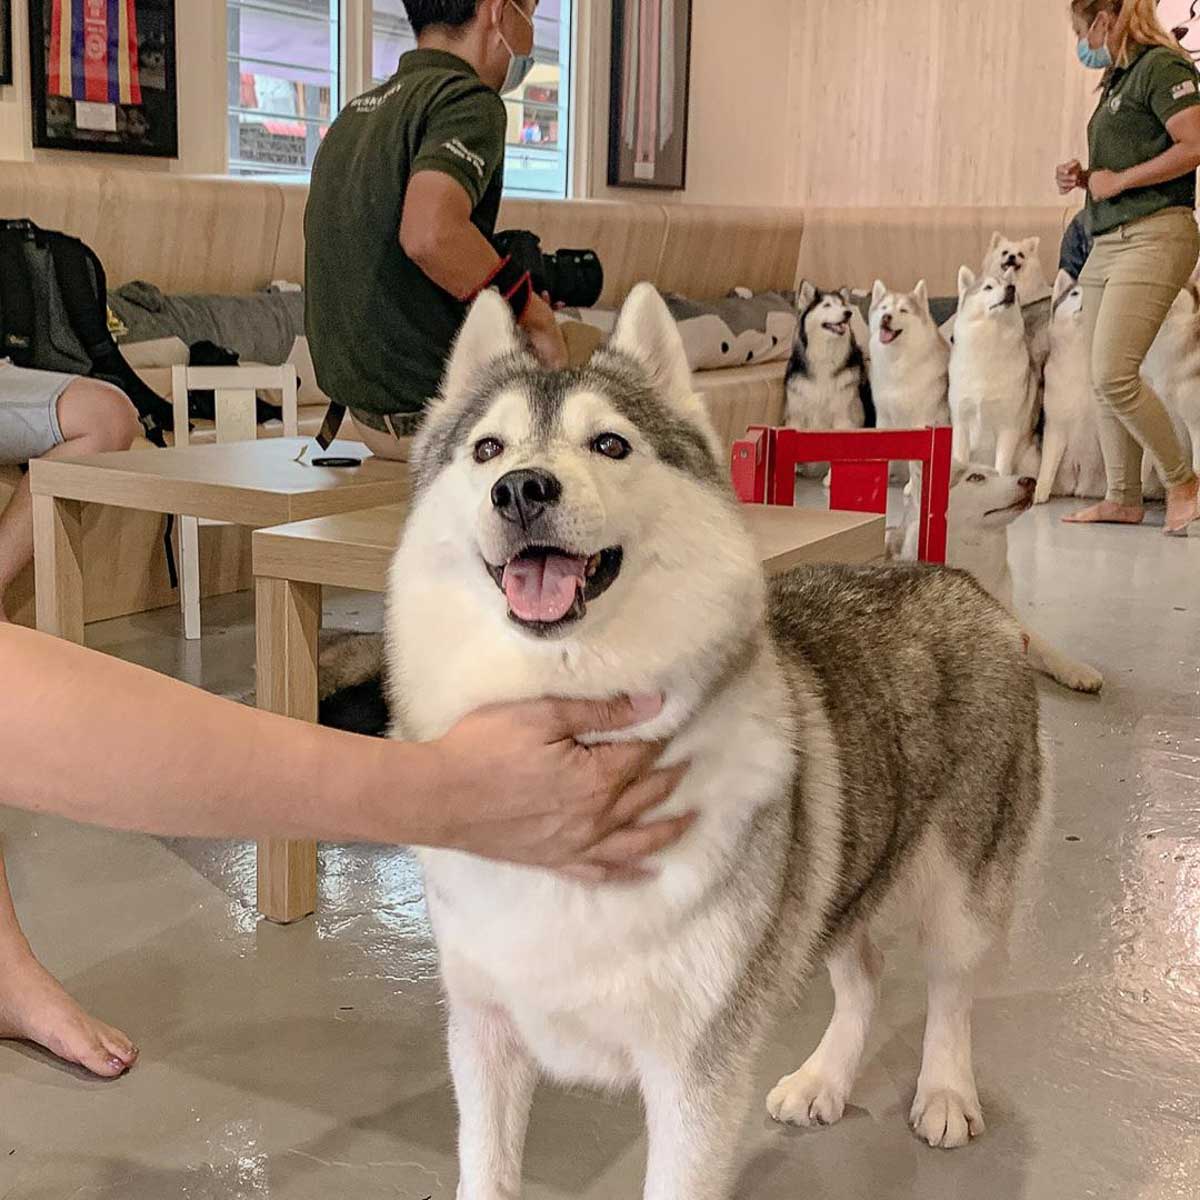 Petting a Siberian Husky in a Husky Cafe - Dog cafes